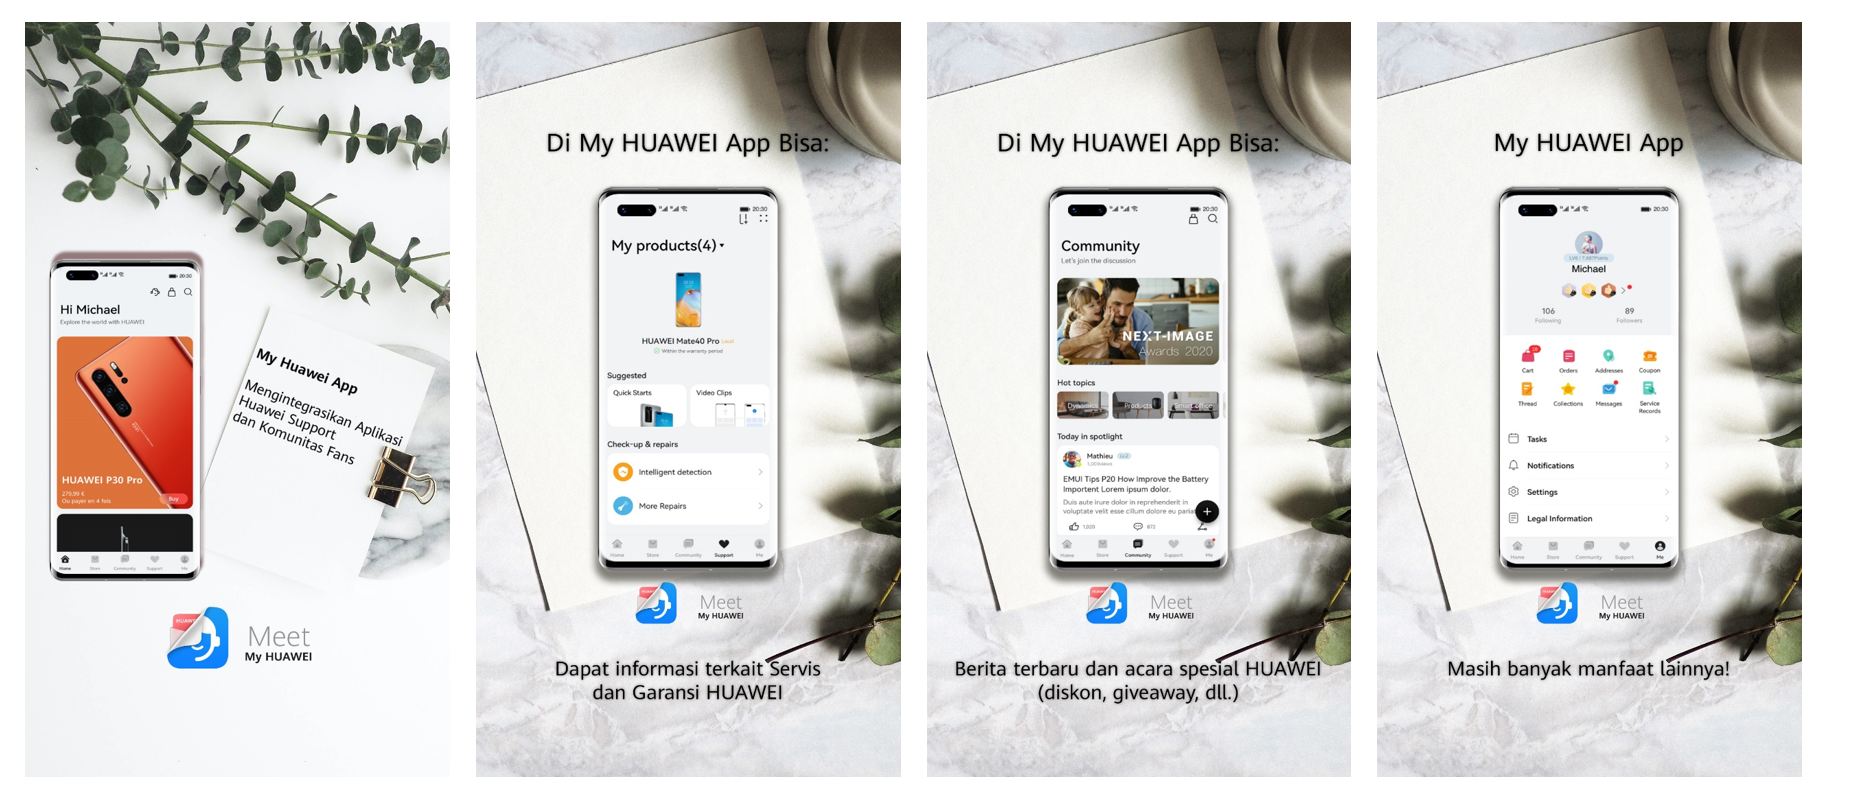 y Huawei merupakan aplikasi resmi untuk memberikan saluran terbaik bagi pelanggan menemukan informasi dan layanan.